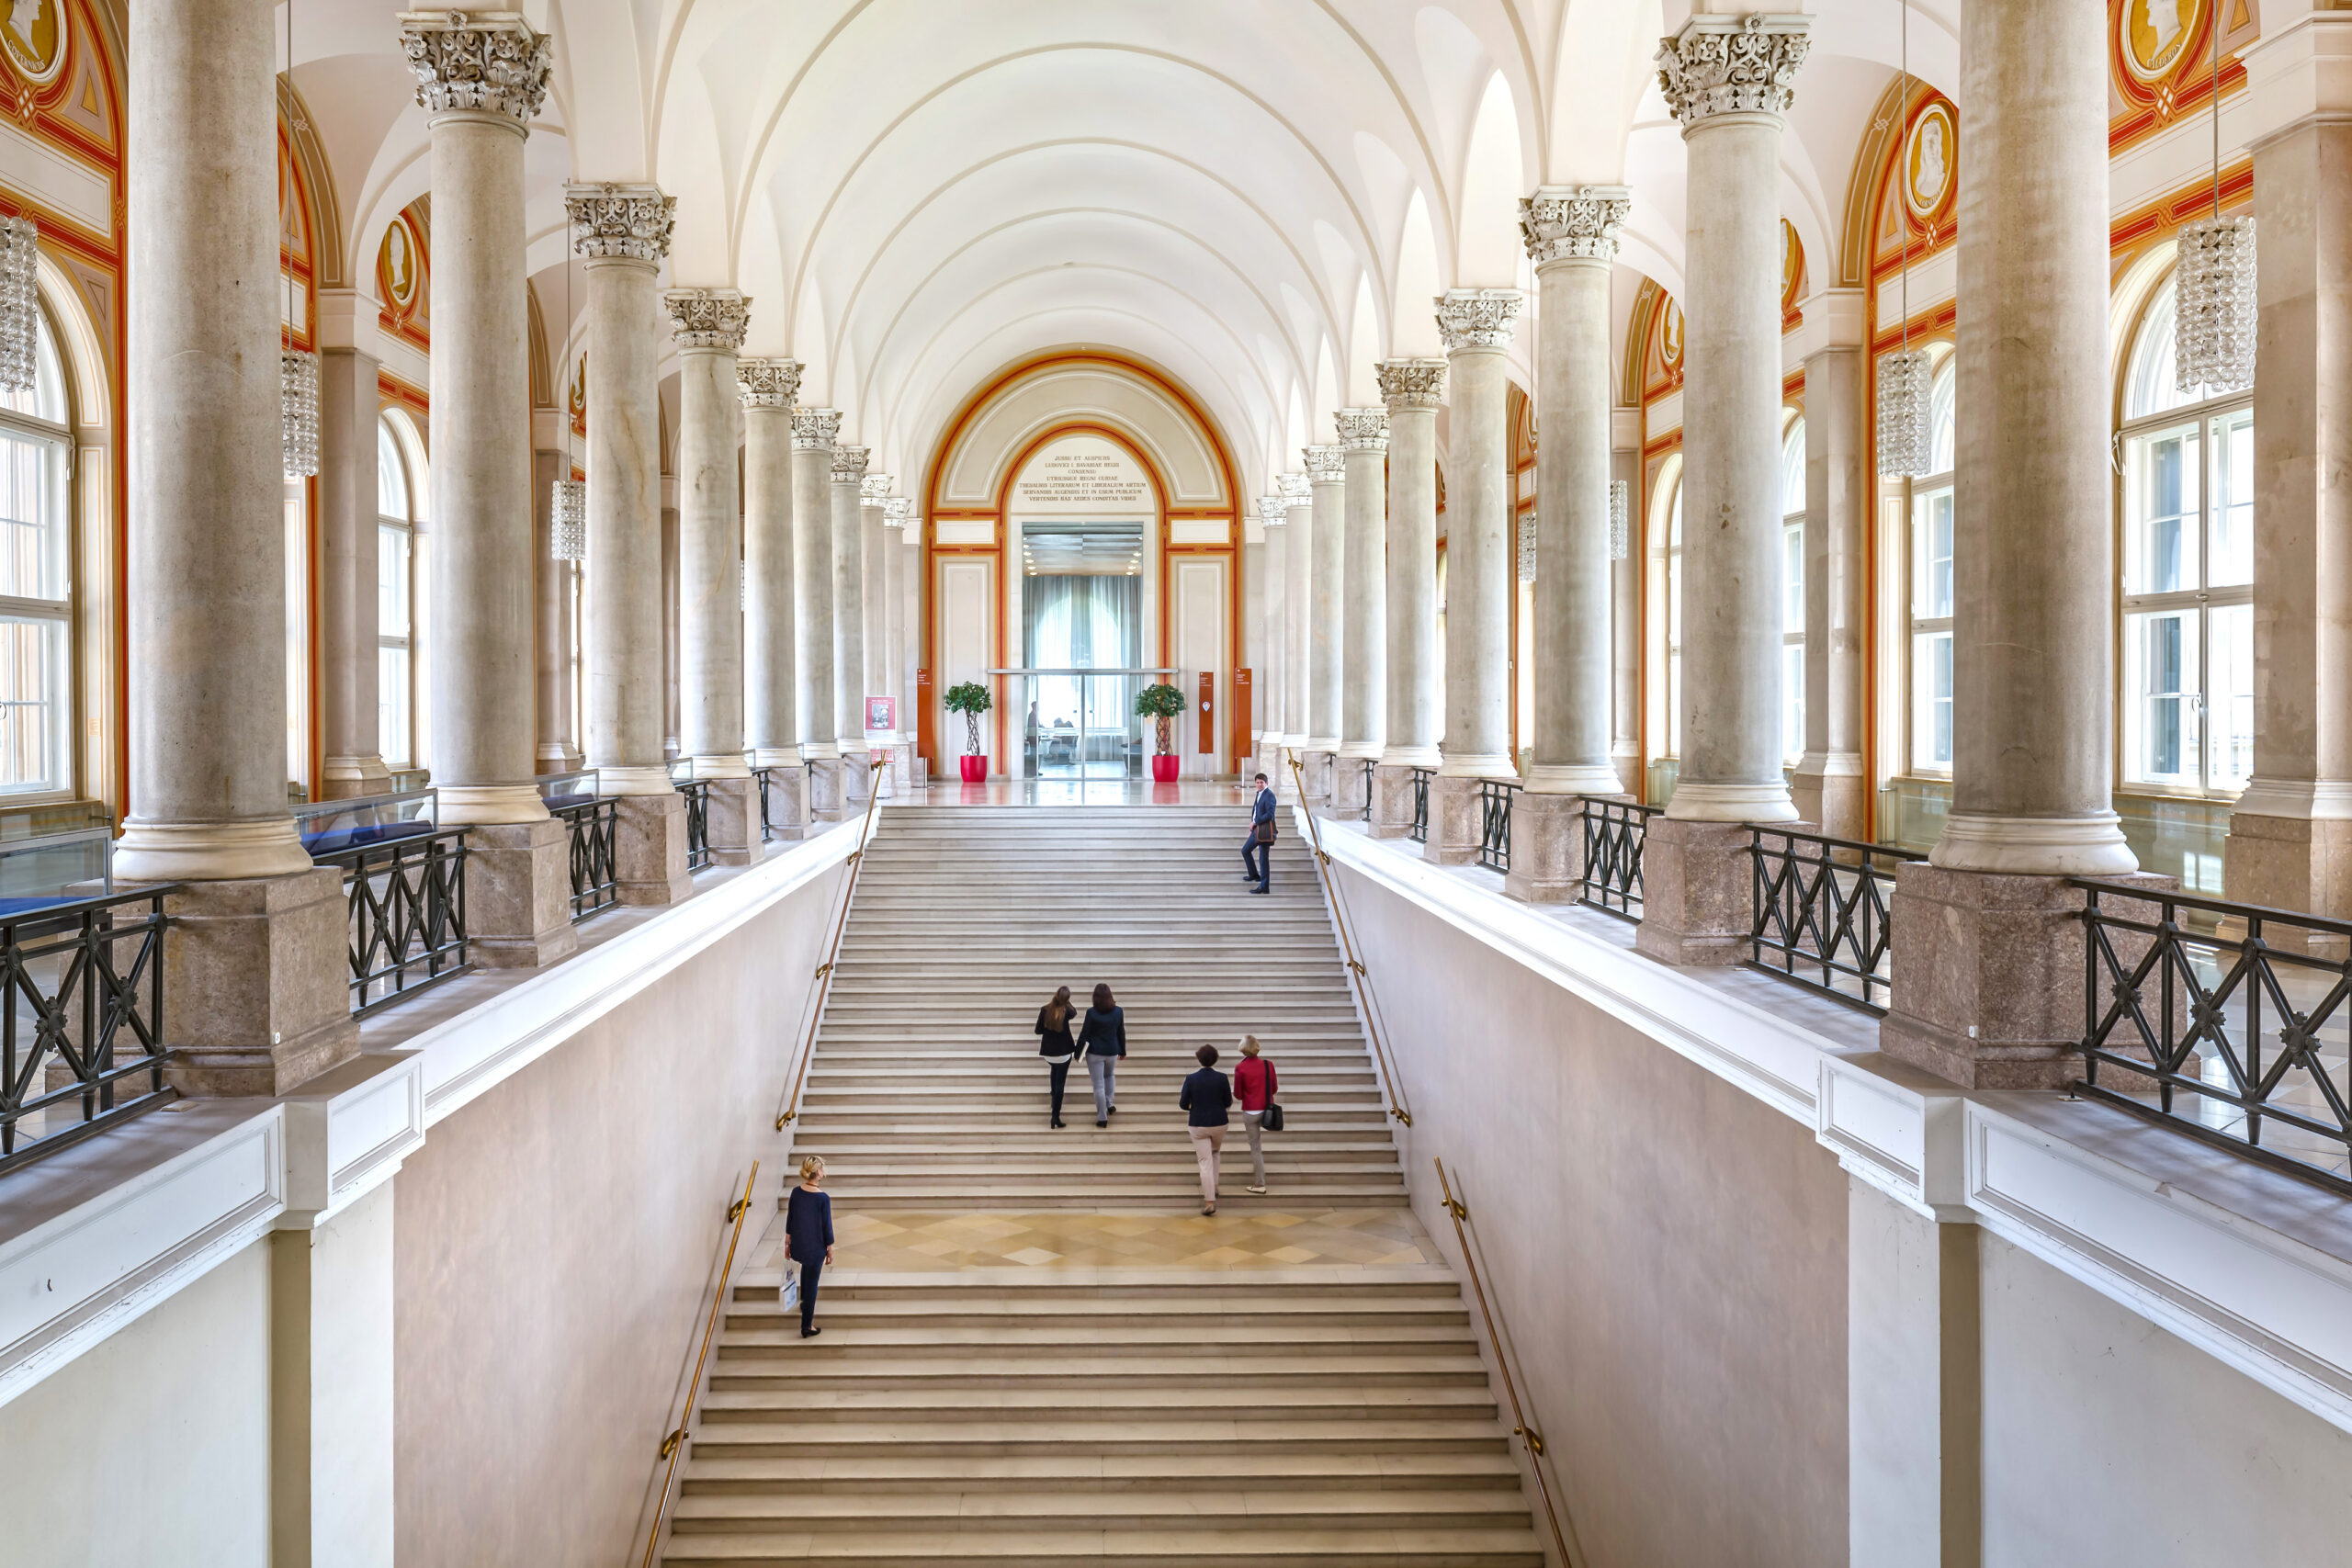 Bibliotheken in München: Bayerische Staatsbibliothek